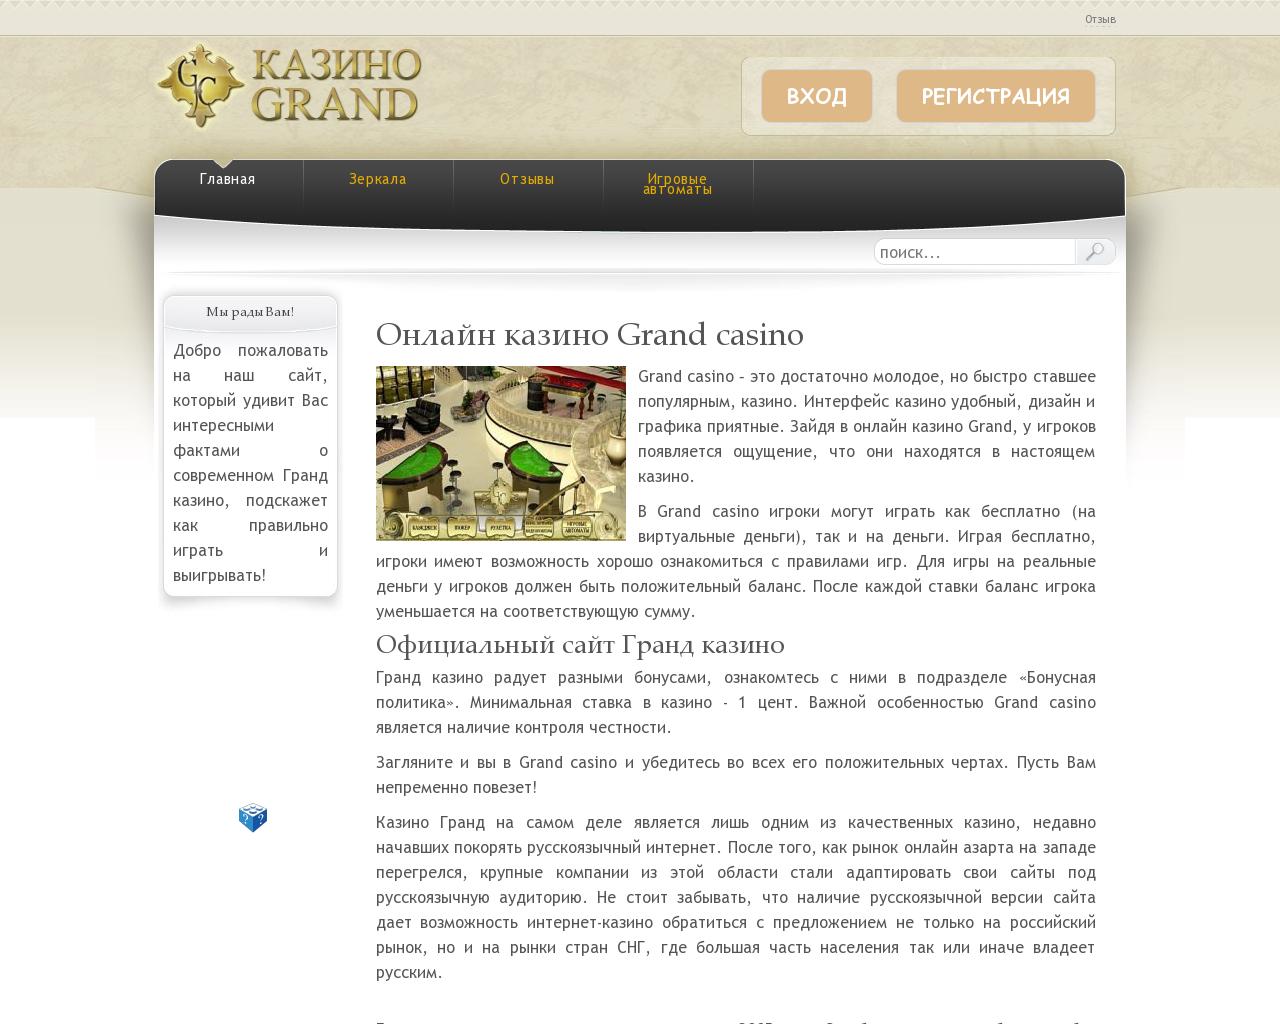 Гранд казино онлайн вход казахстан forum joycasino приложение на андроид скачать последнюю